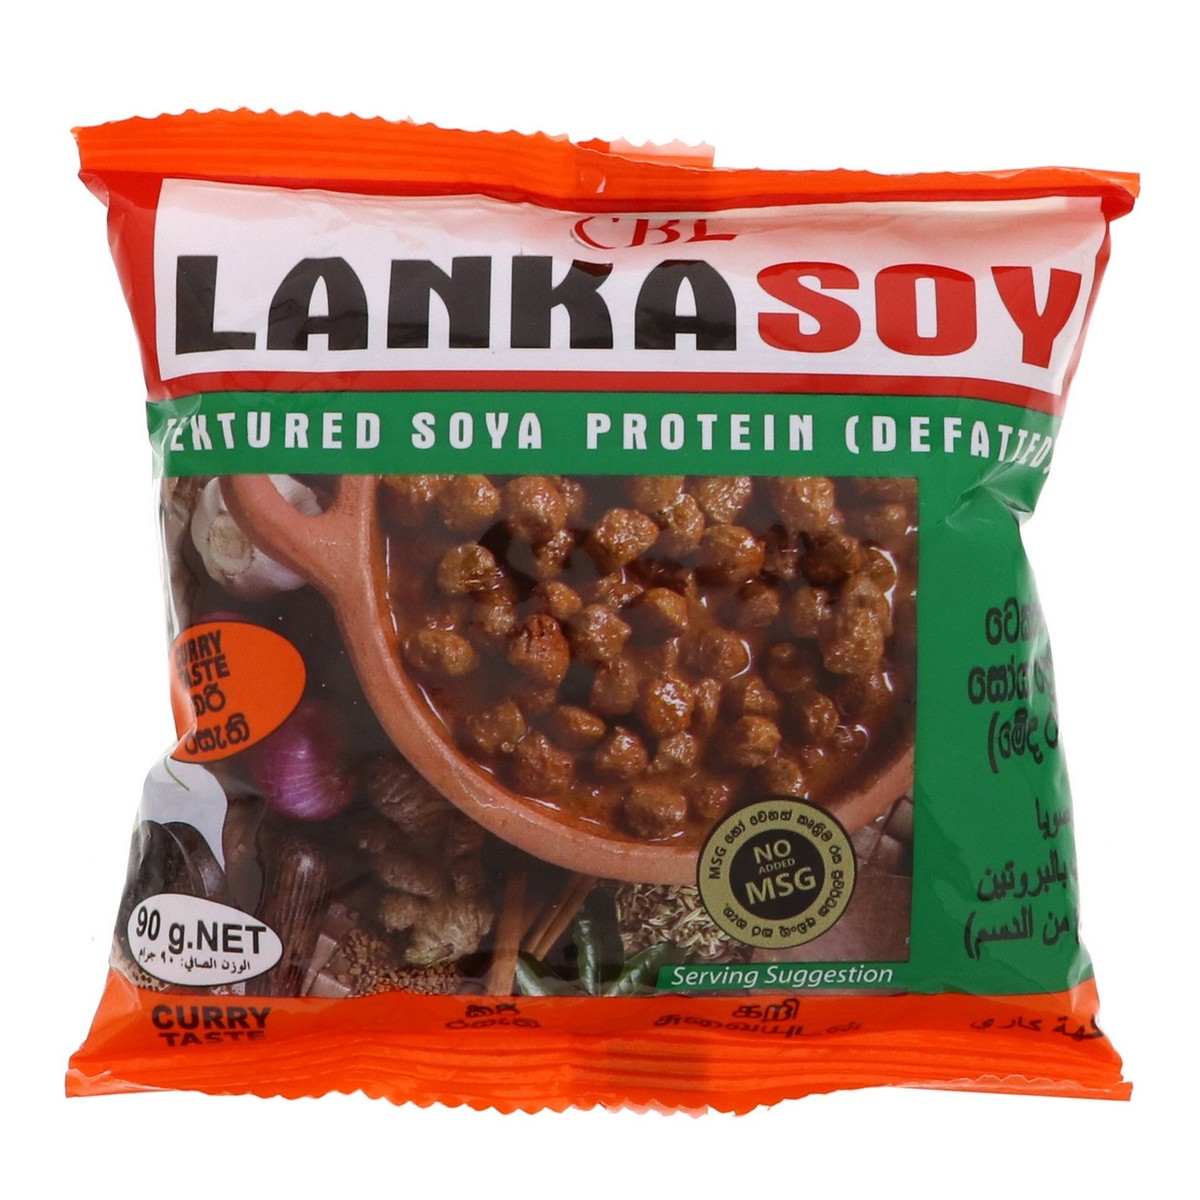 CBL Lanka Soy Tetured Soya Protein 90g